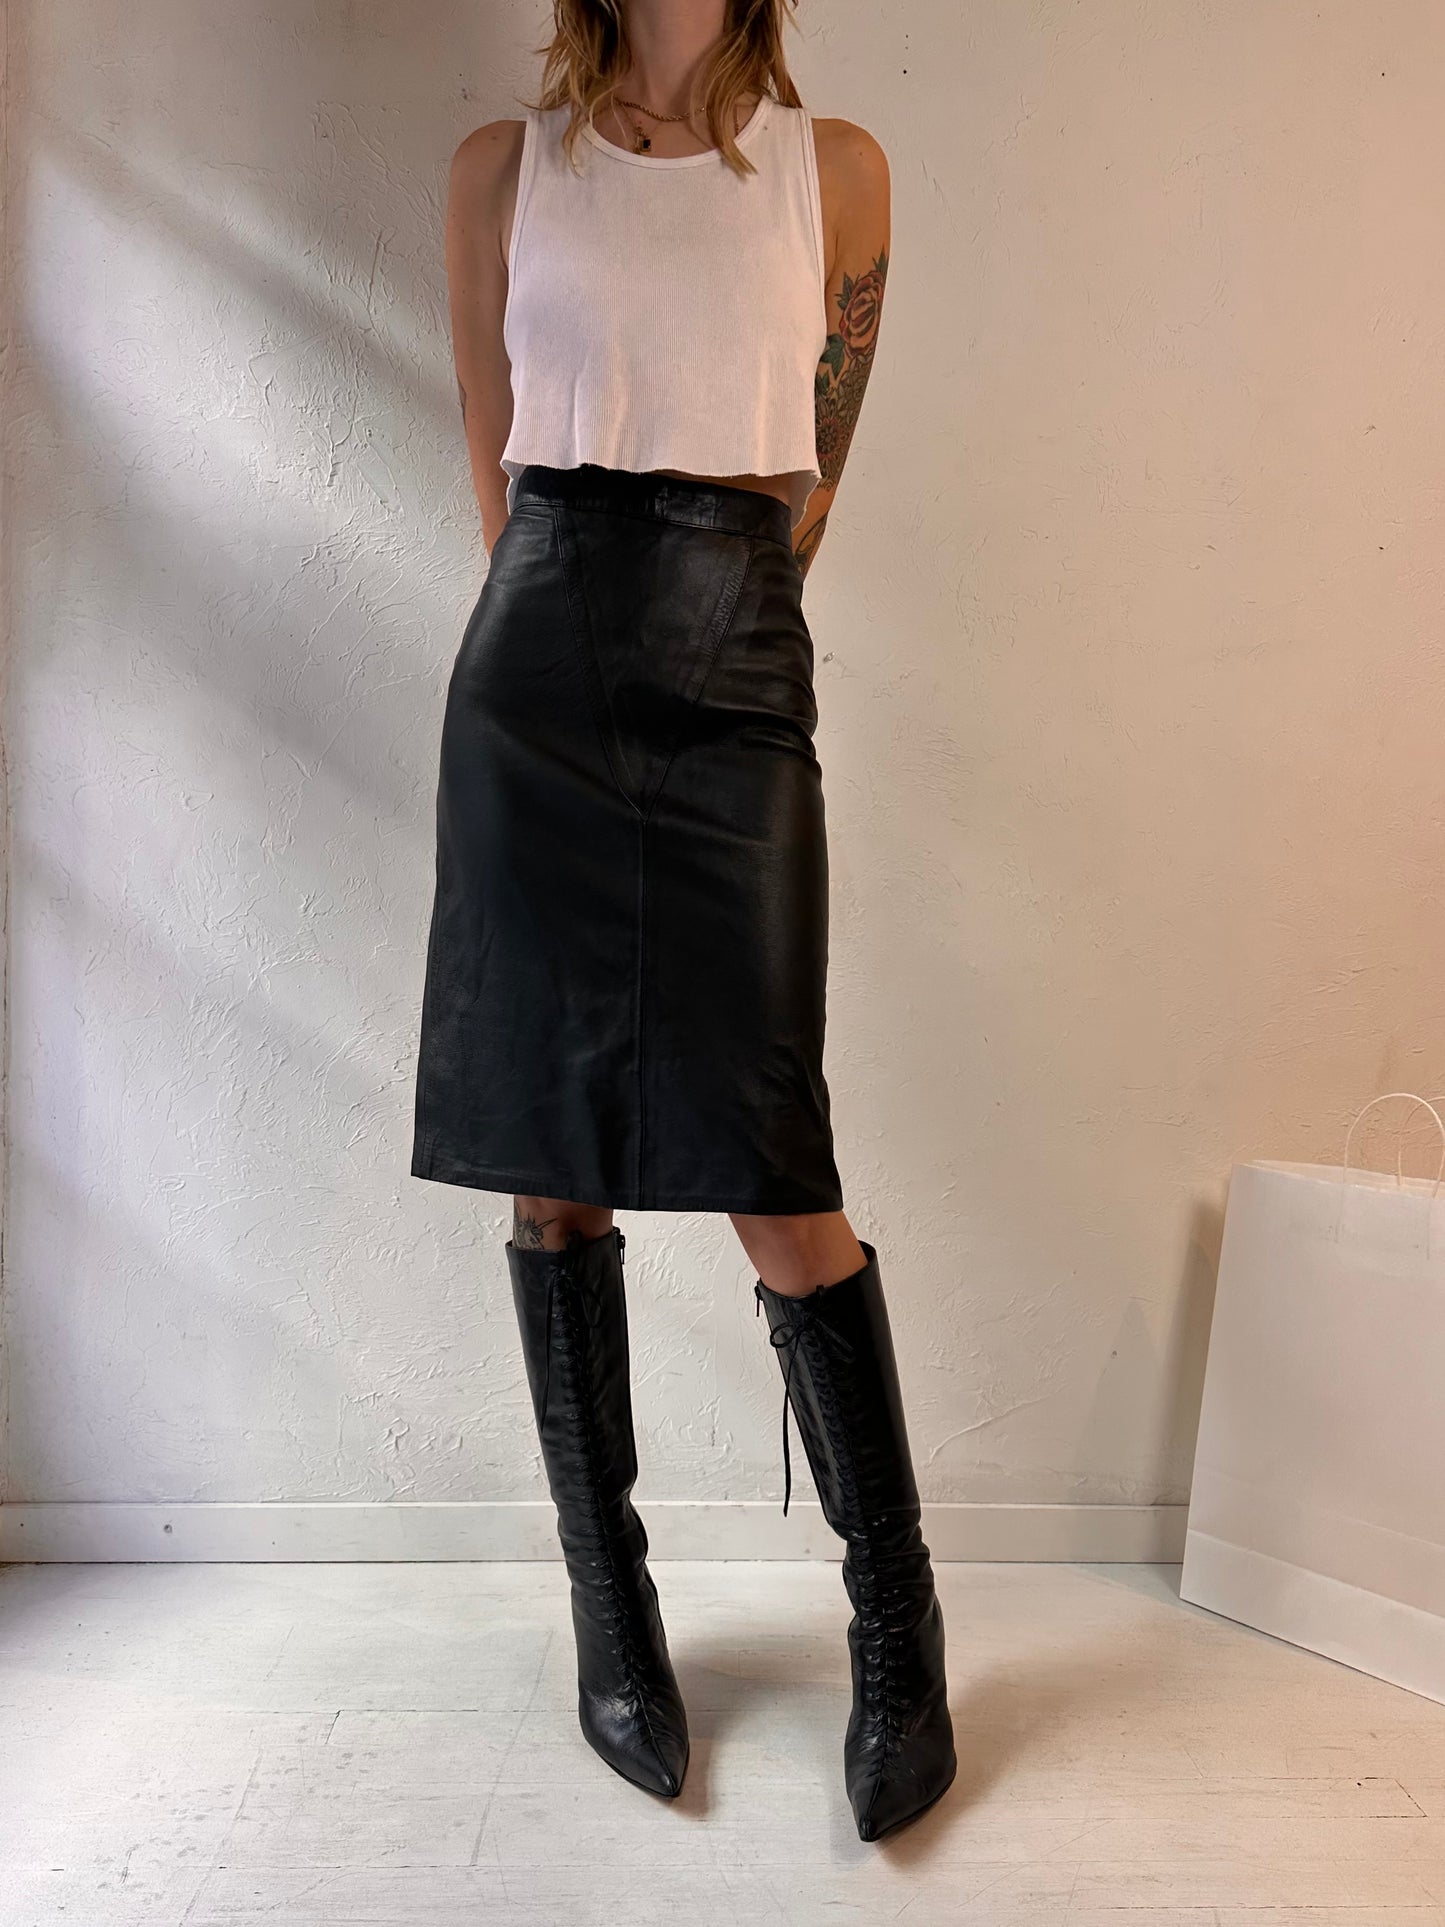 Vintage Handmade Black Leather Pencil Skirt / Small